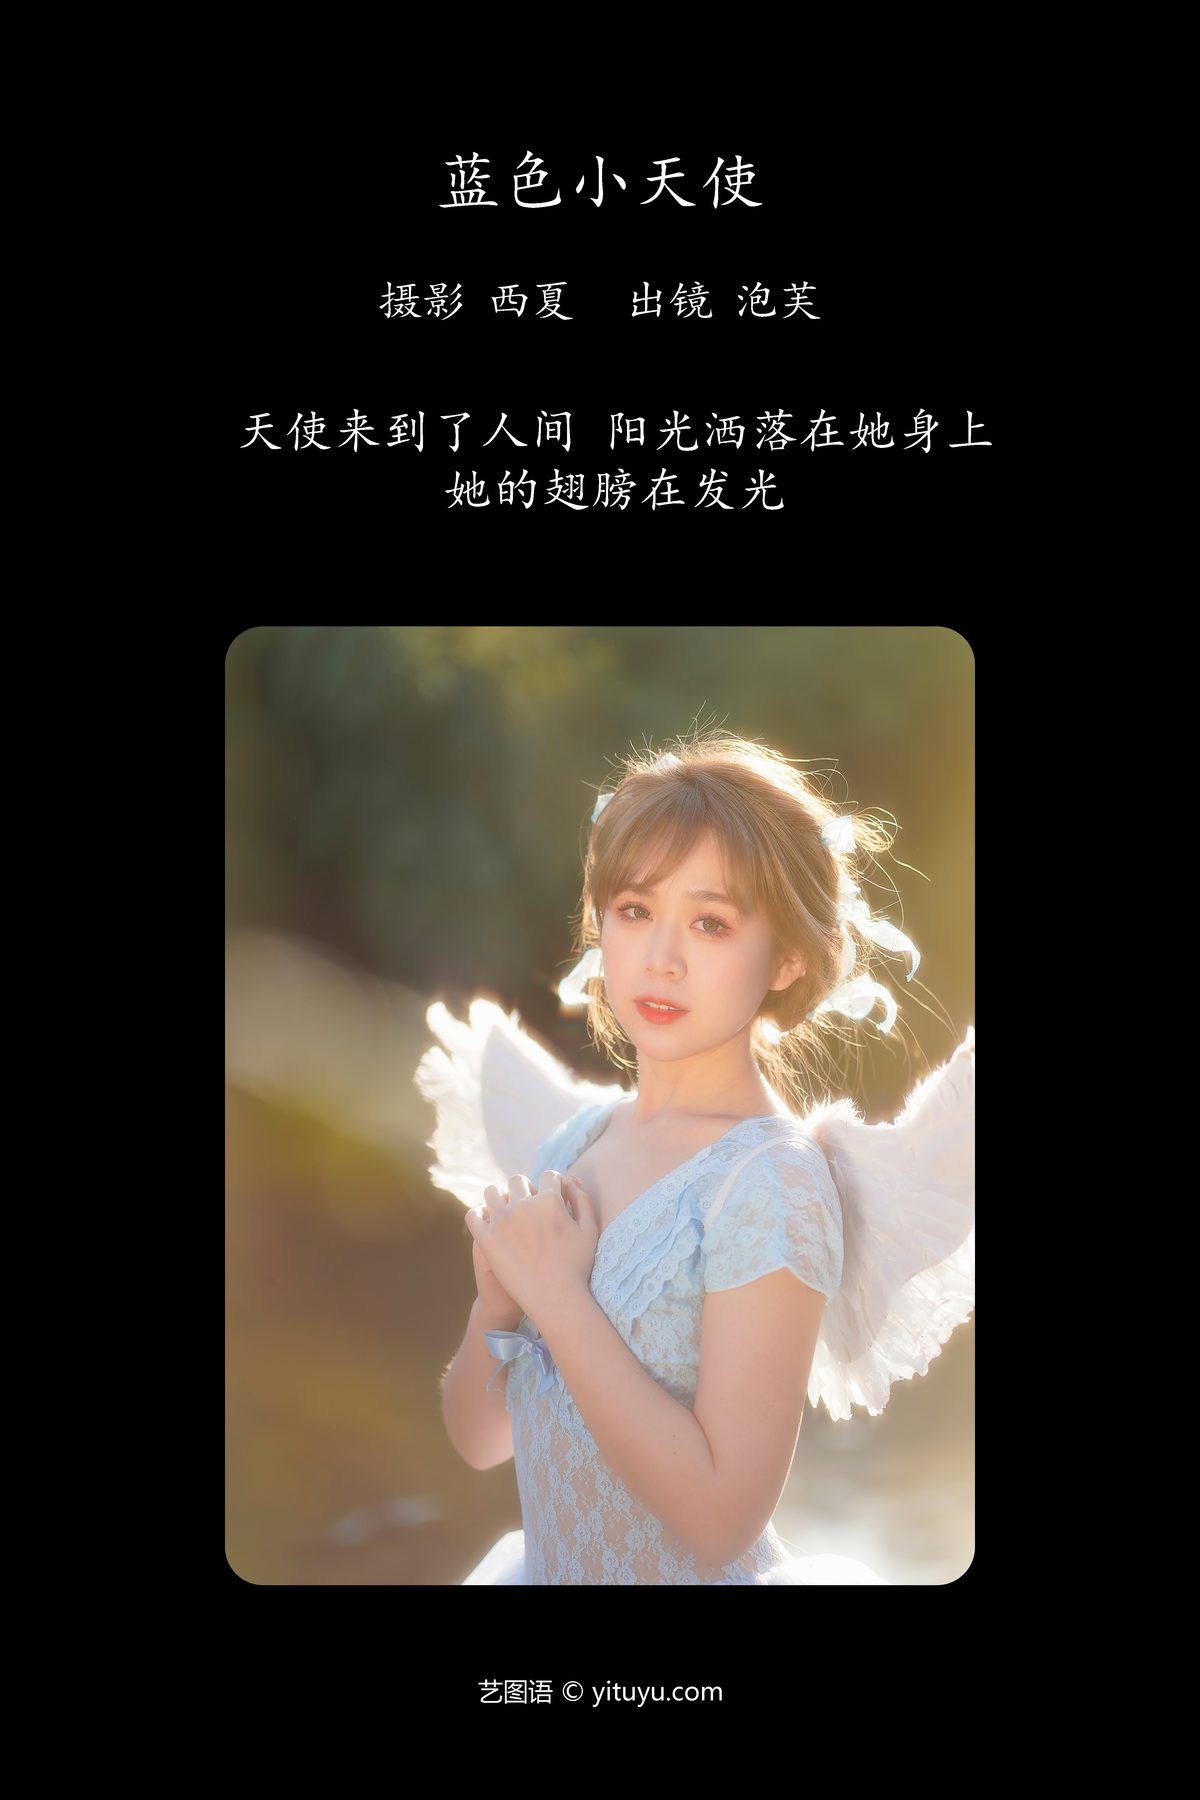 YiTuYu艺图语 Vol 6096 Pao Fu Xiao Fang 0002 5968878381.jpg